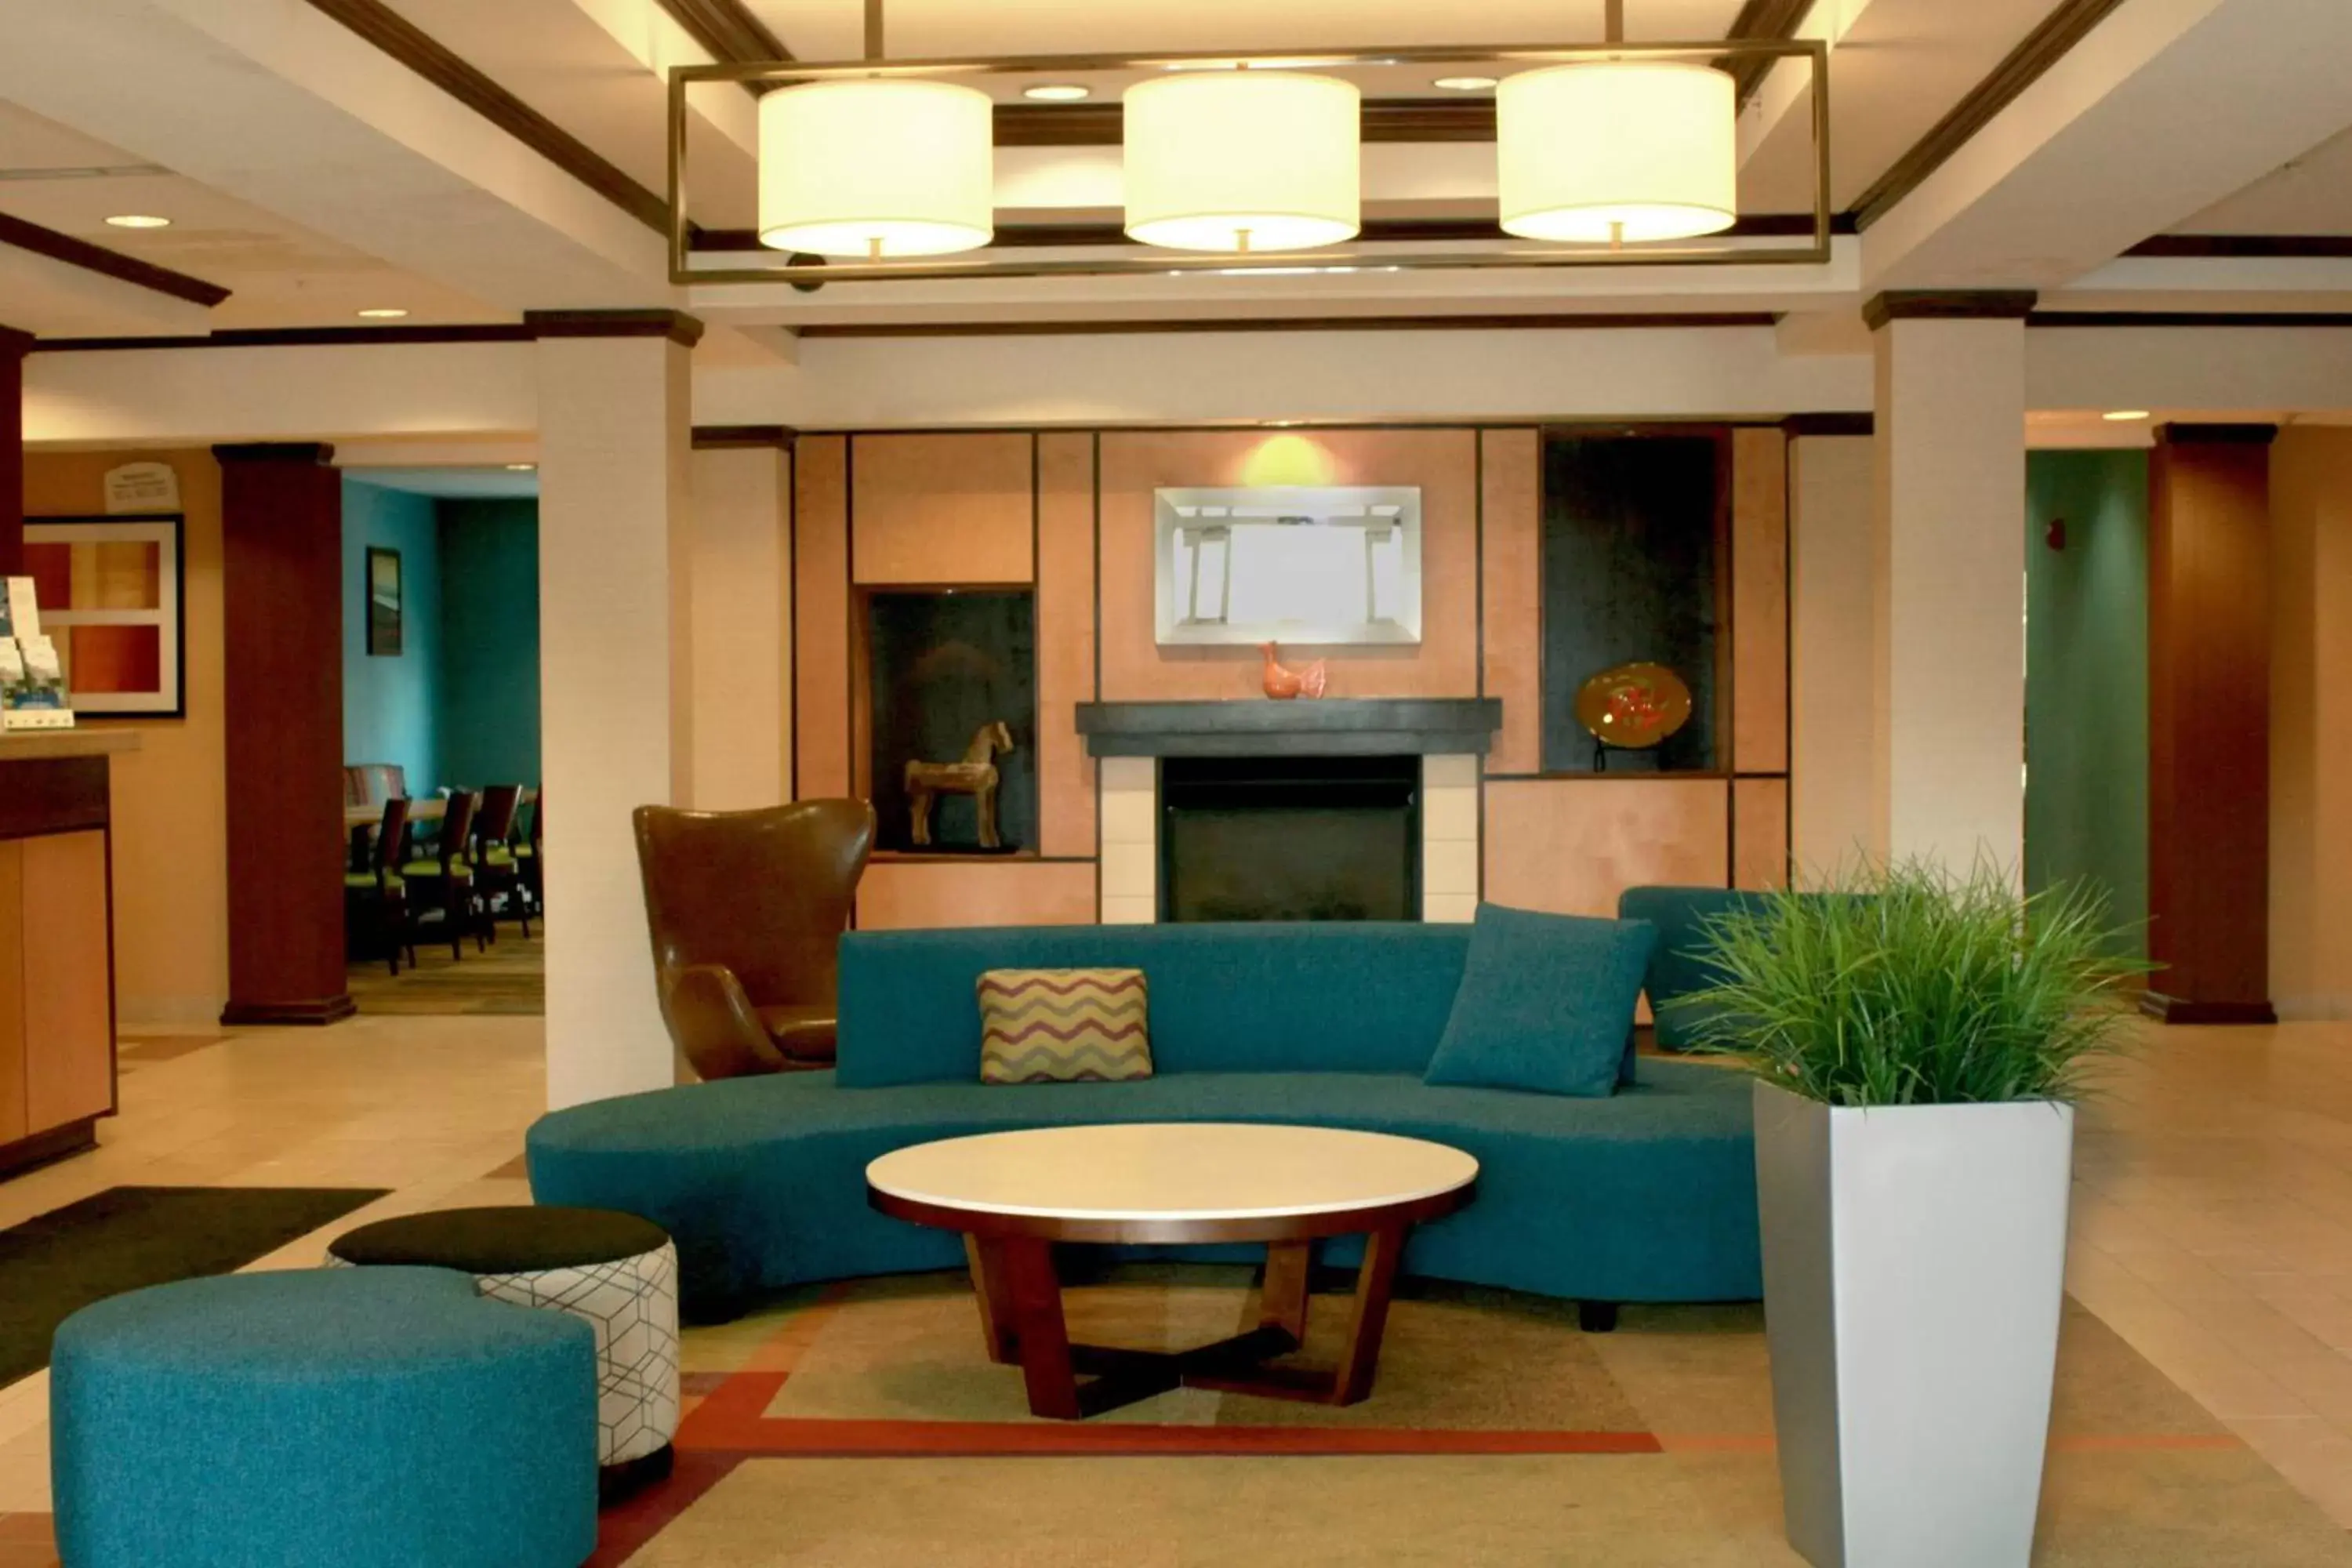 Lobby or reception, Lobby/Reception in Fairfield Inn & Suites by Marriott Fairmont